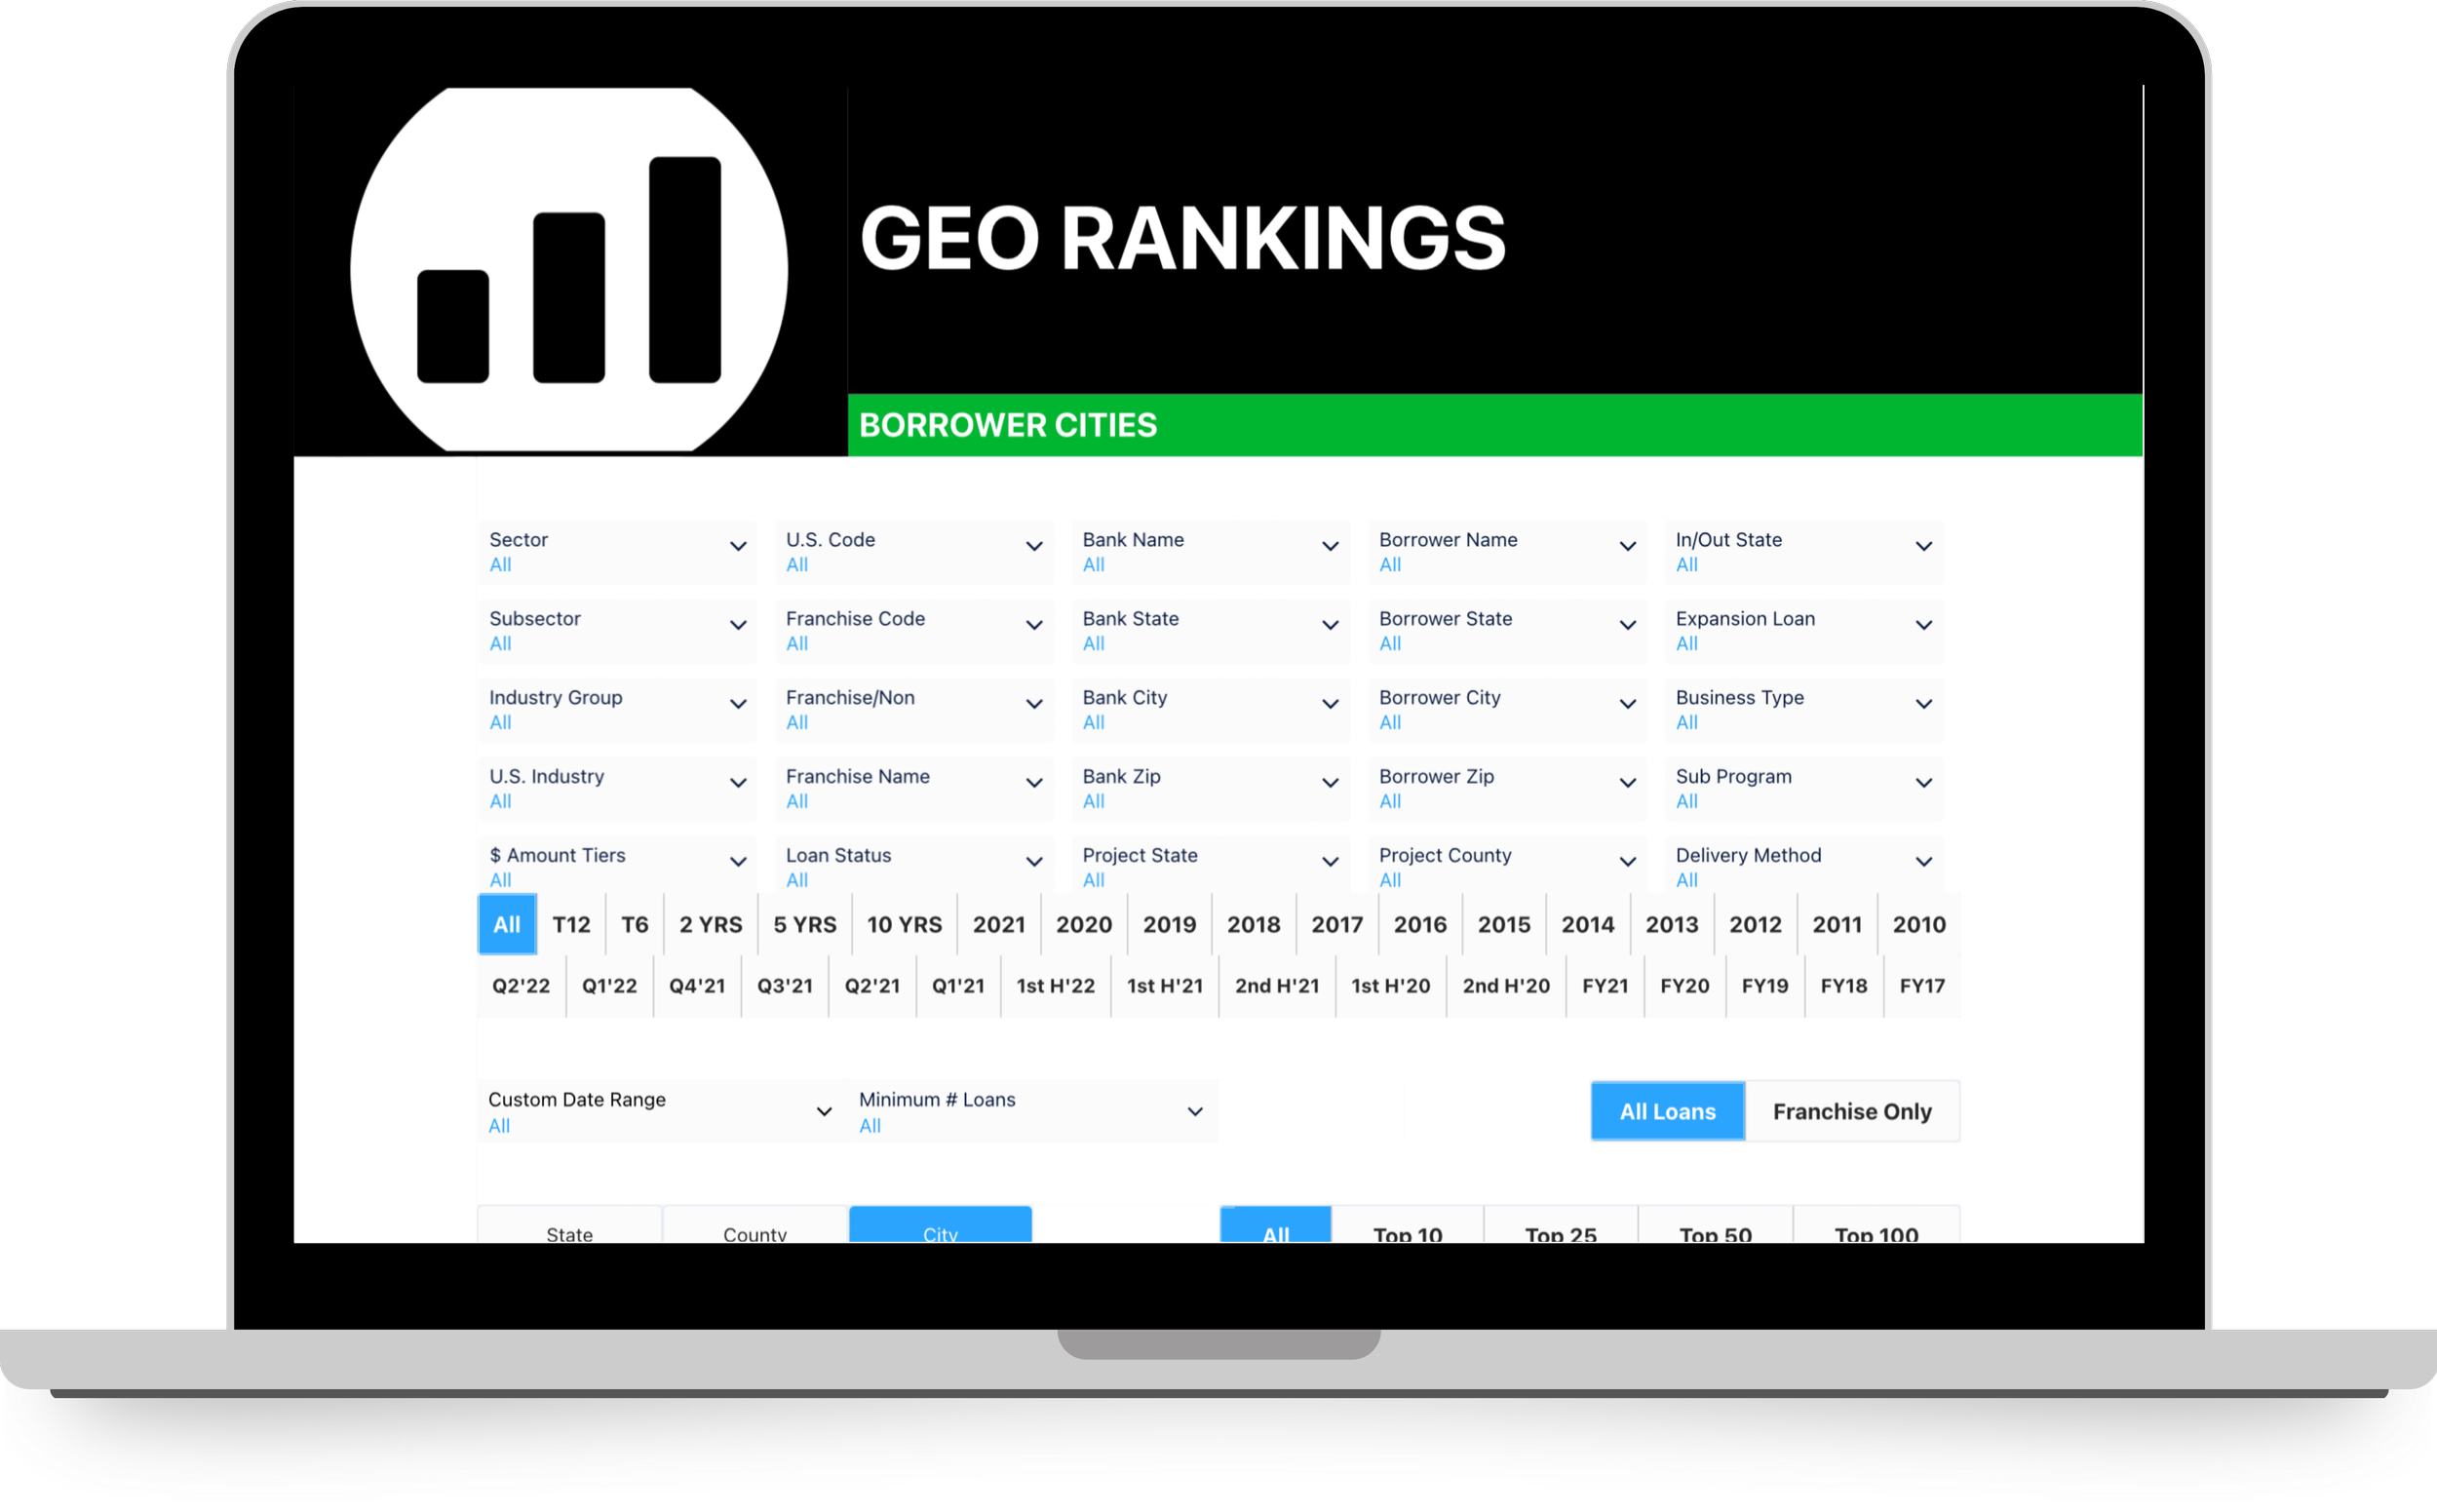 Geo Rankings (Cities).png